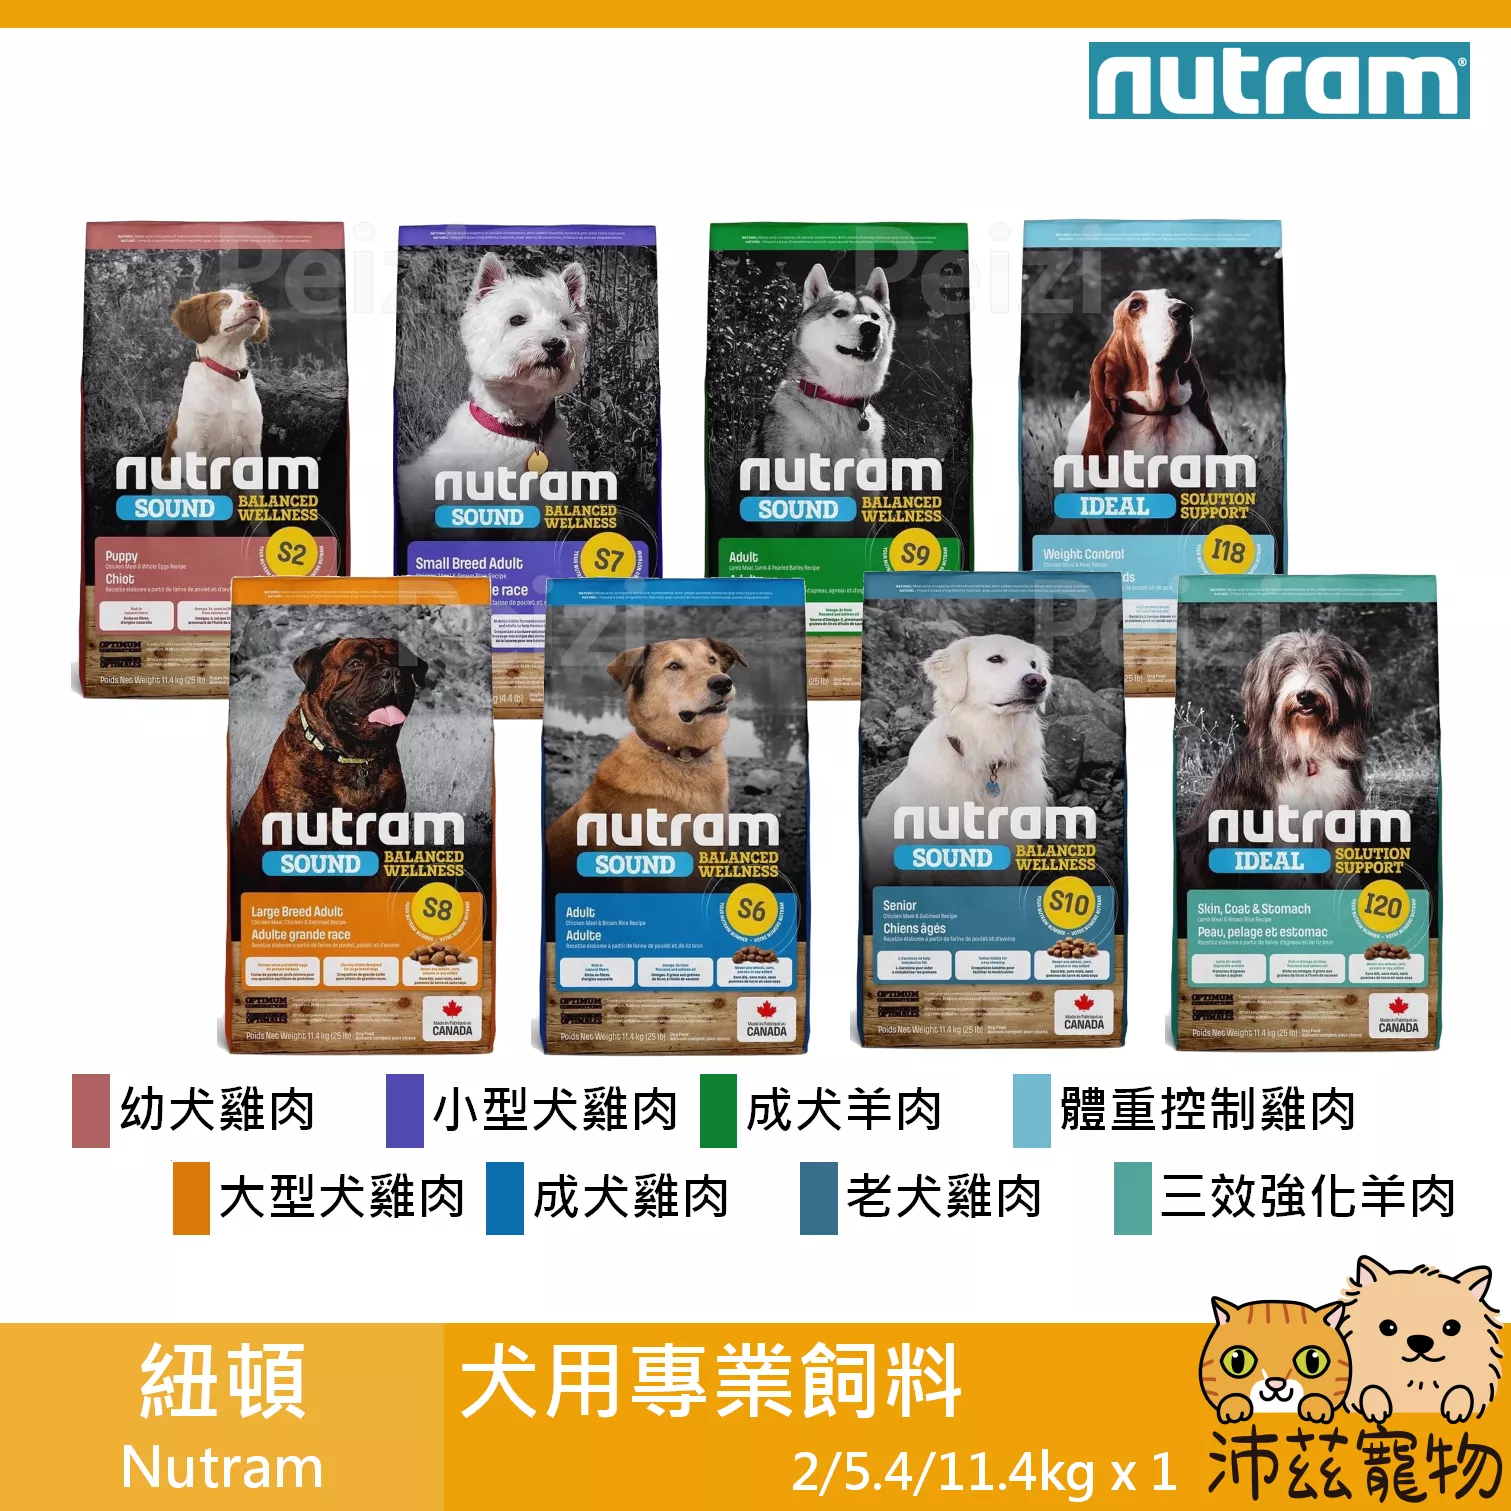 【紐頓 Nutram 犬用專業飼料】S6 I20 加拿大 狗飼料 狗 飼料 2kg 5.4kg 11.4kg